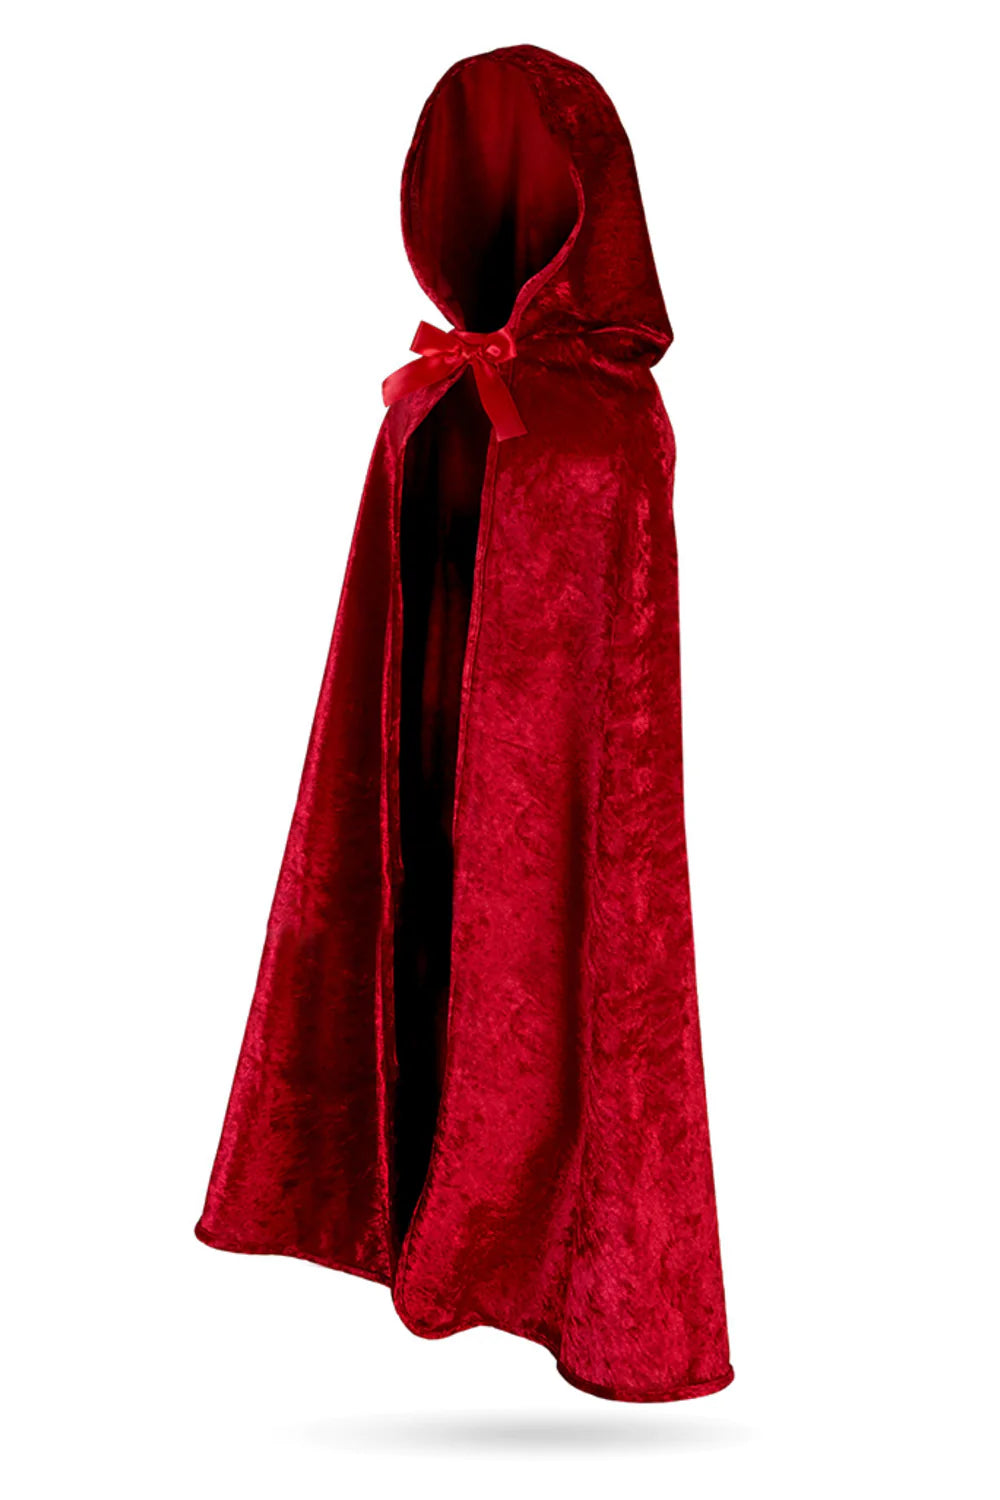 Capa - Caperucita Roja (Varias tallas)